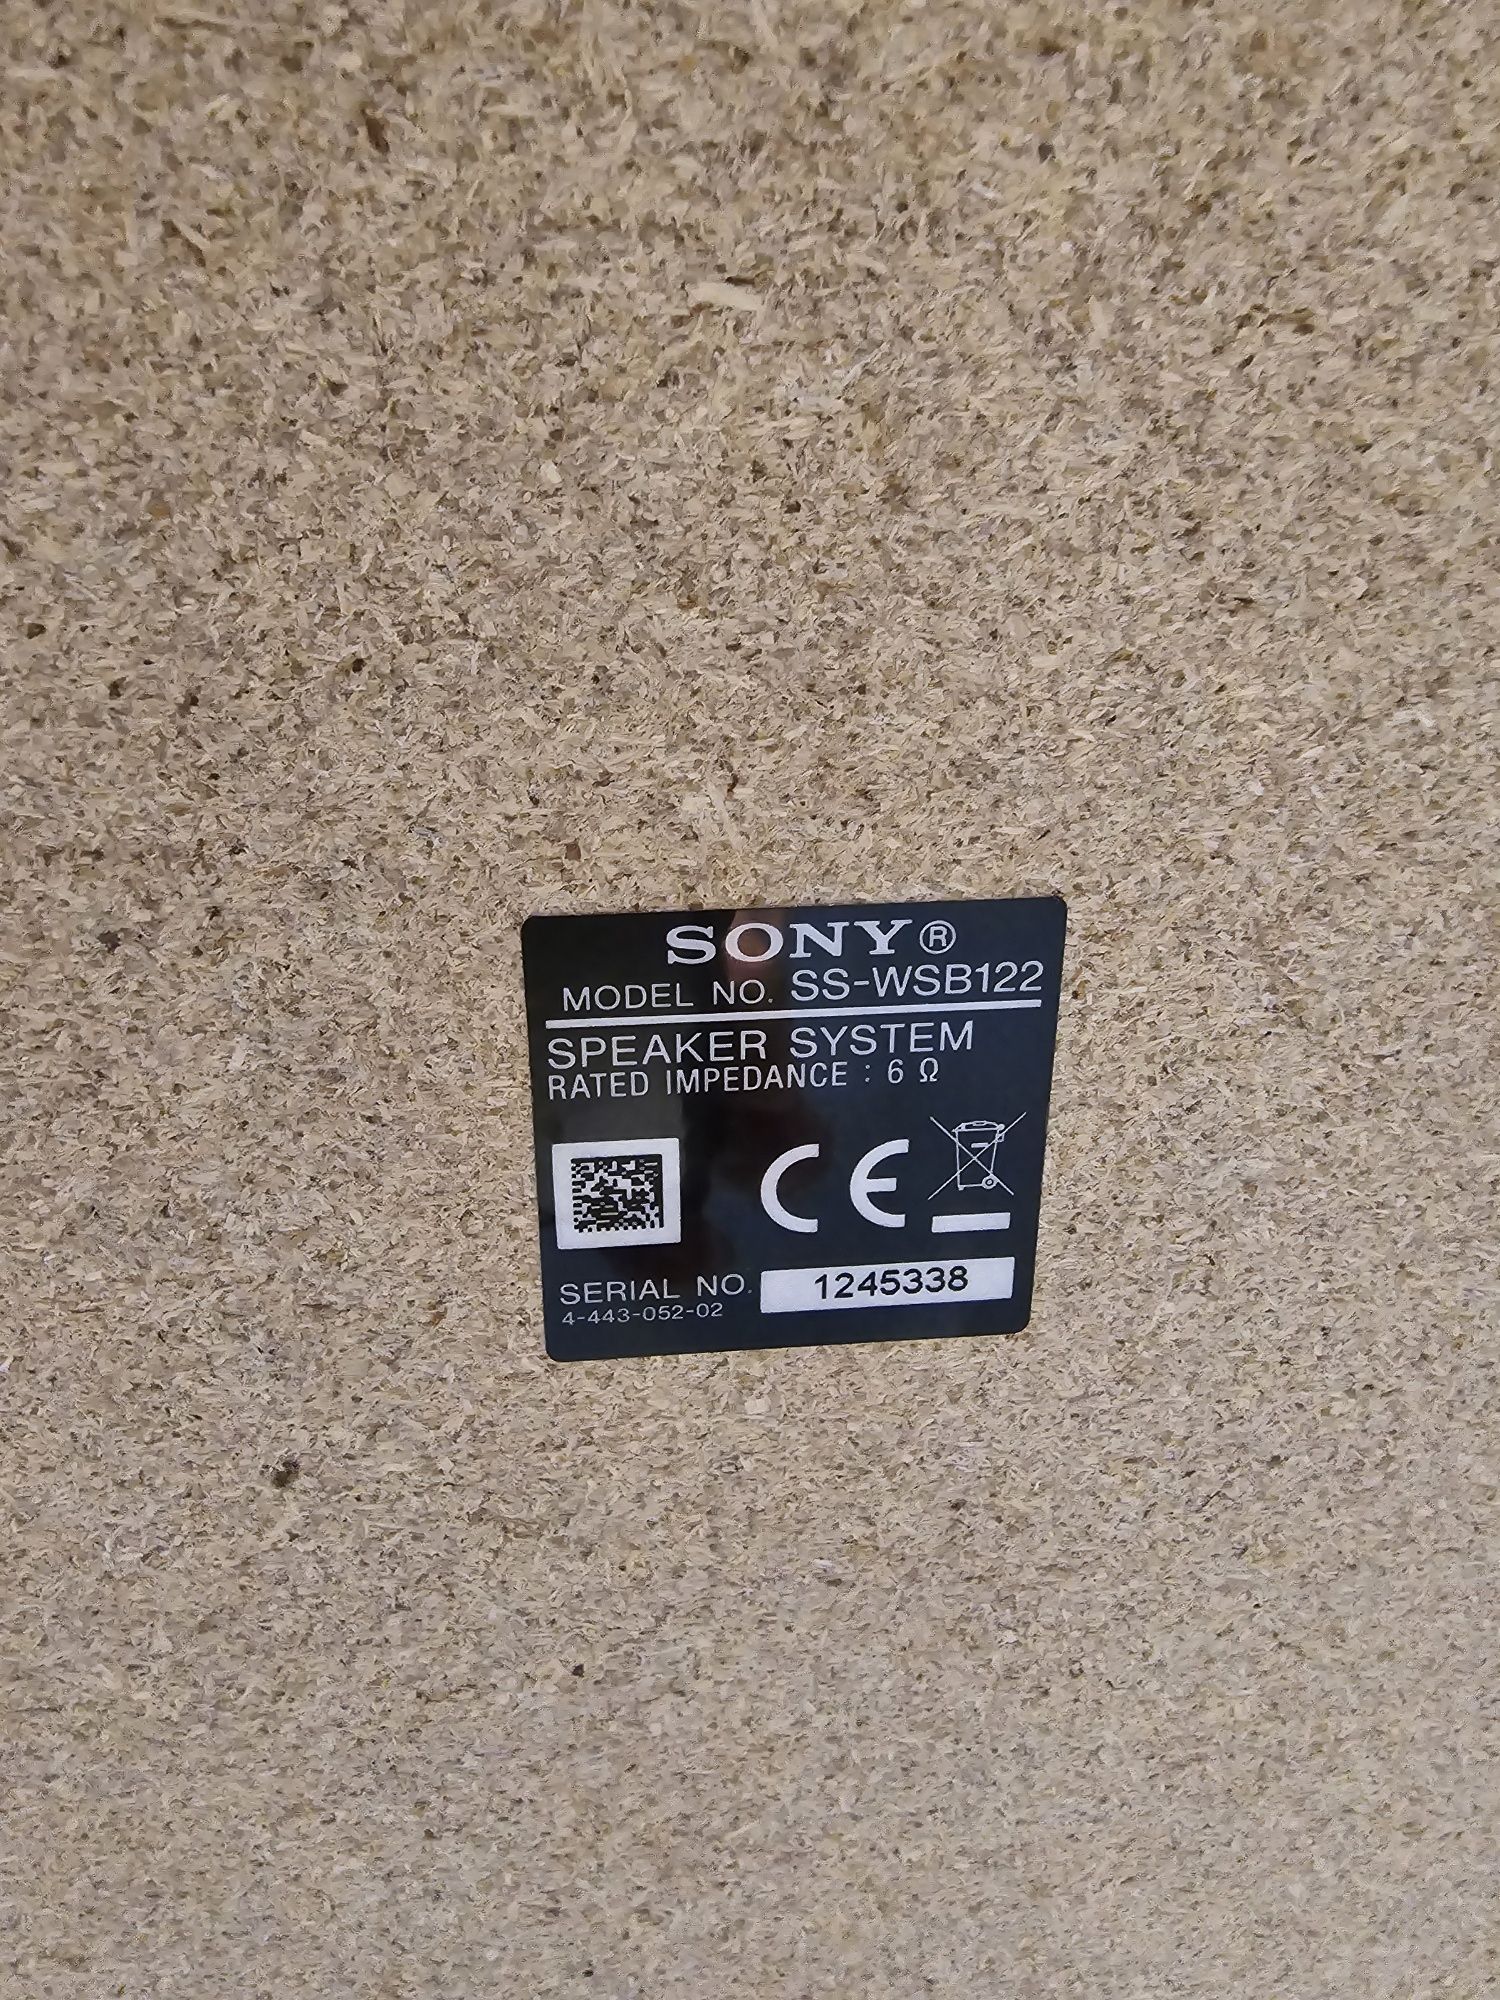 Dwa zestawy Sony 2.1 + 5.1 sprzedaje wszystko z foto